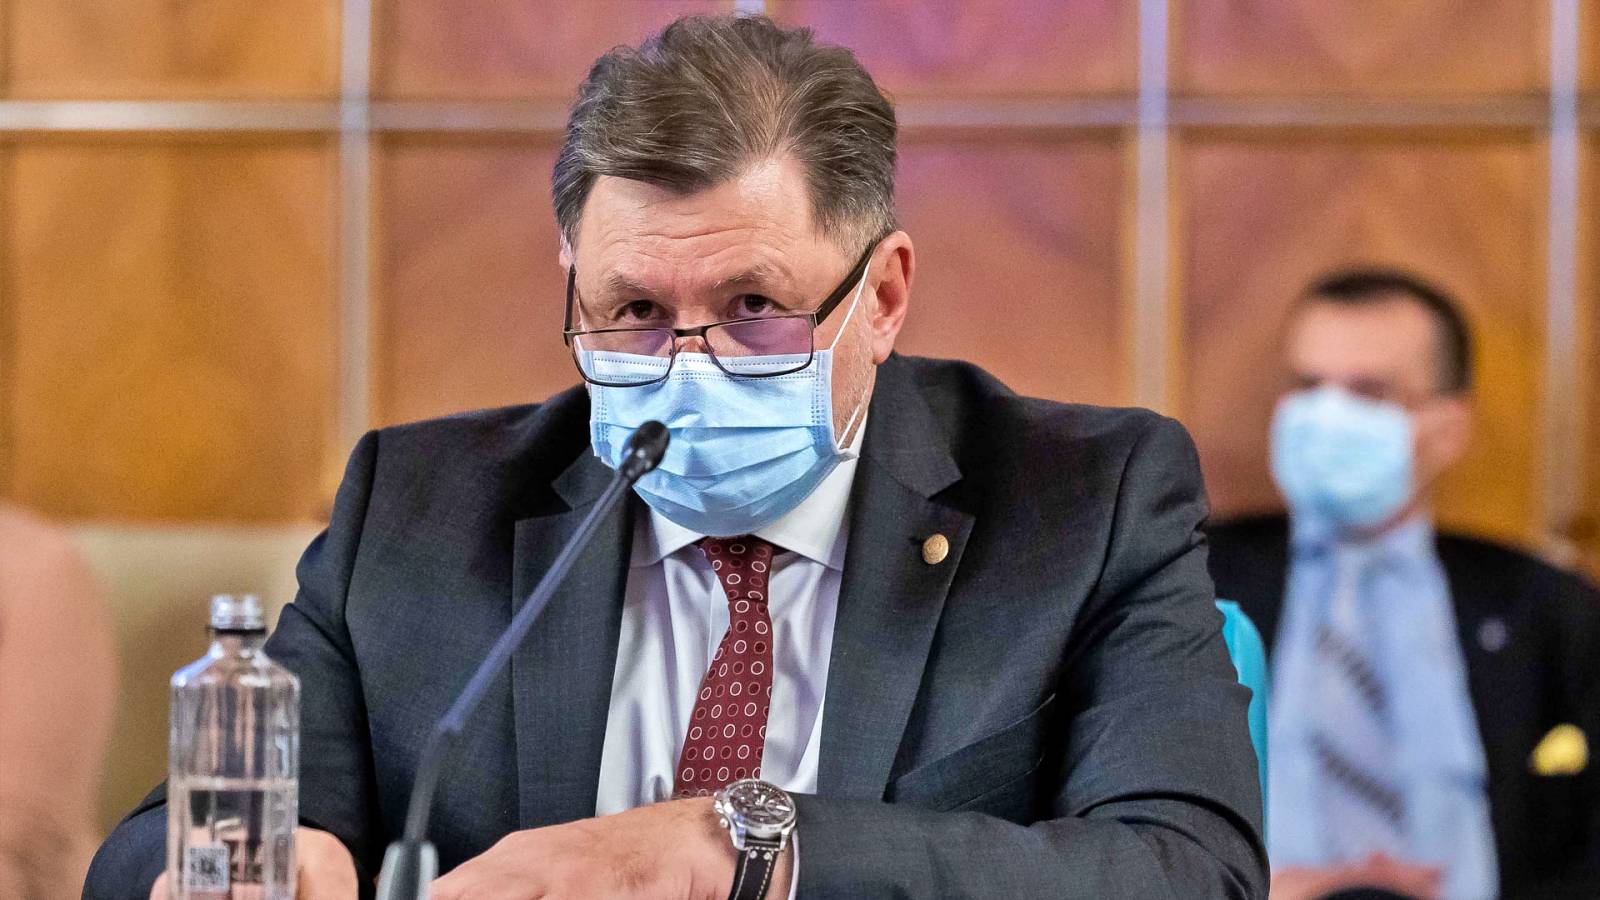 Gesundheitsminister: Wichtige Erklärung in letzter Minute: Rumänen jetzt im Visier